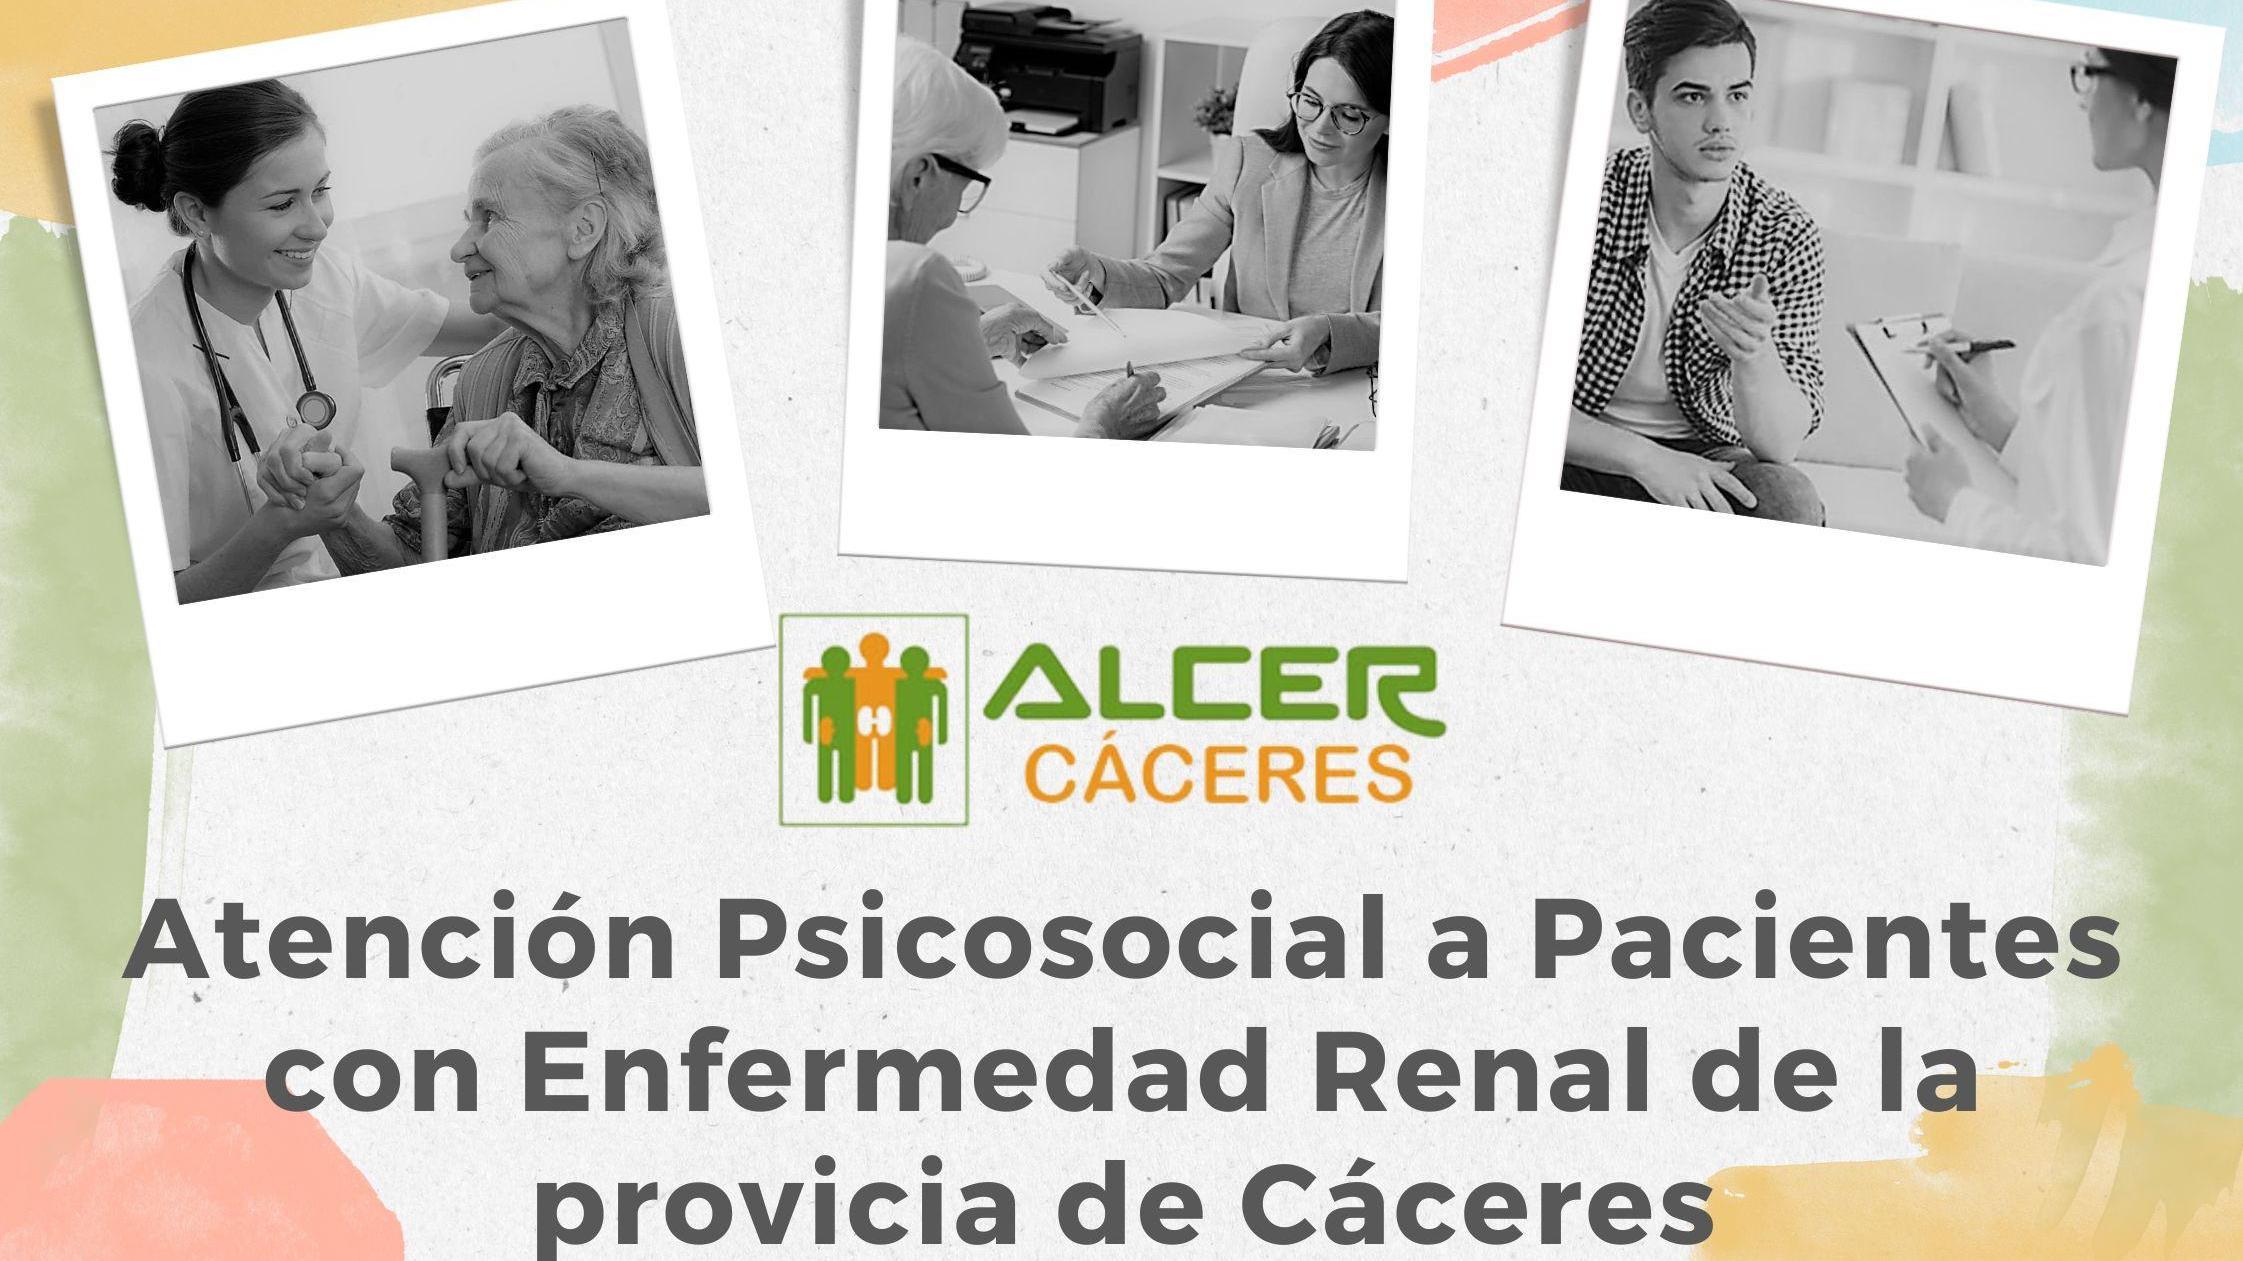 Programa de Atención Psicosocial a pacientes de la provincia de Cáceres